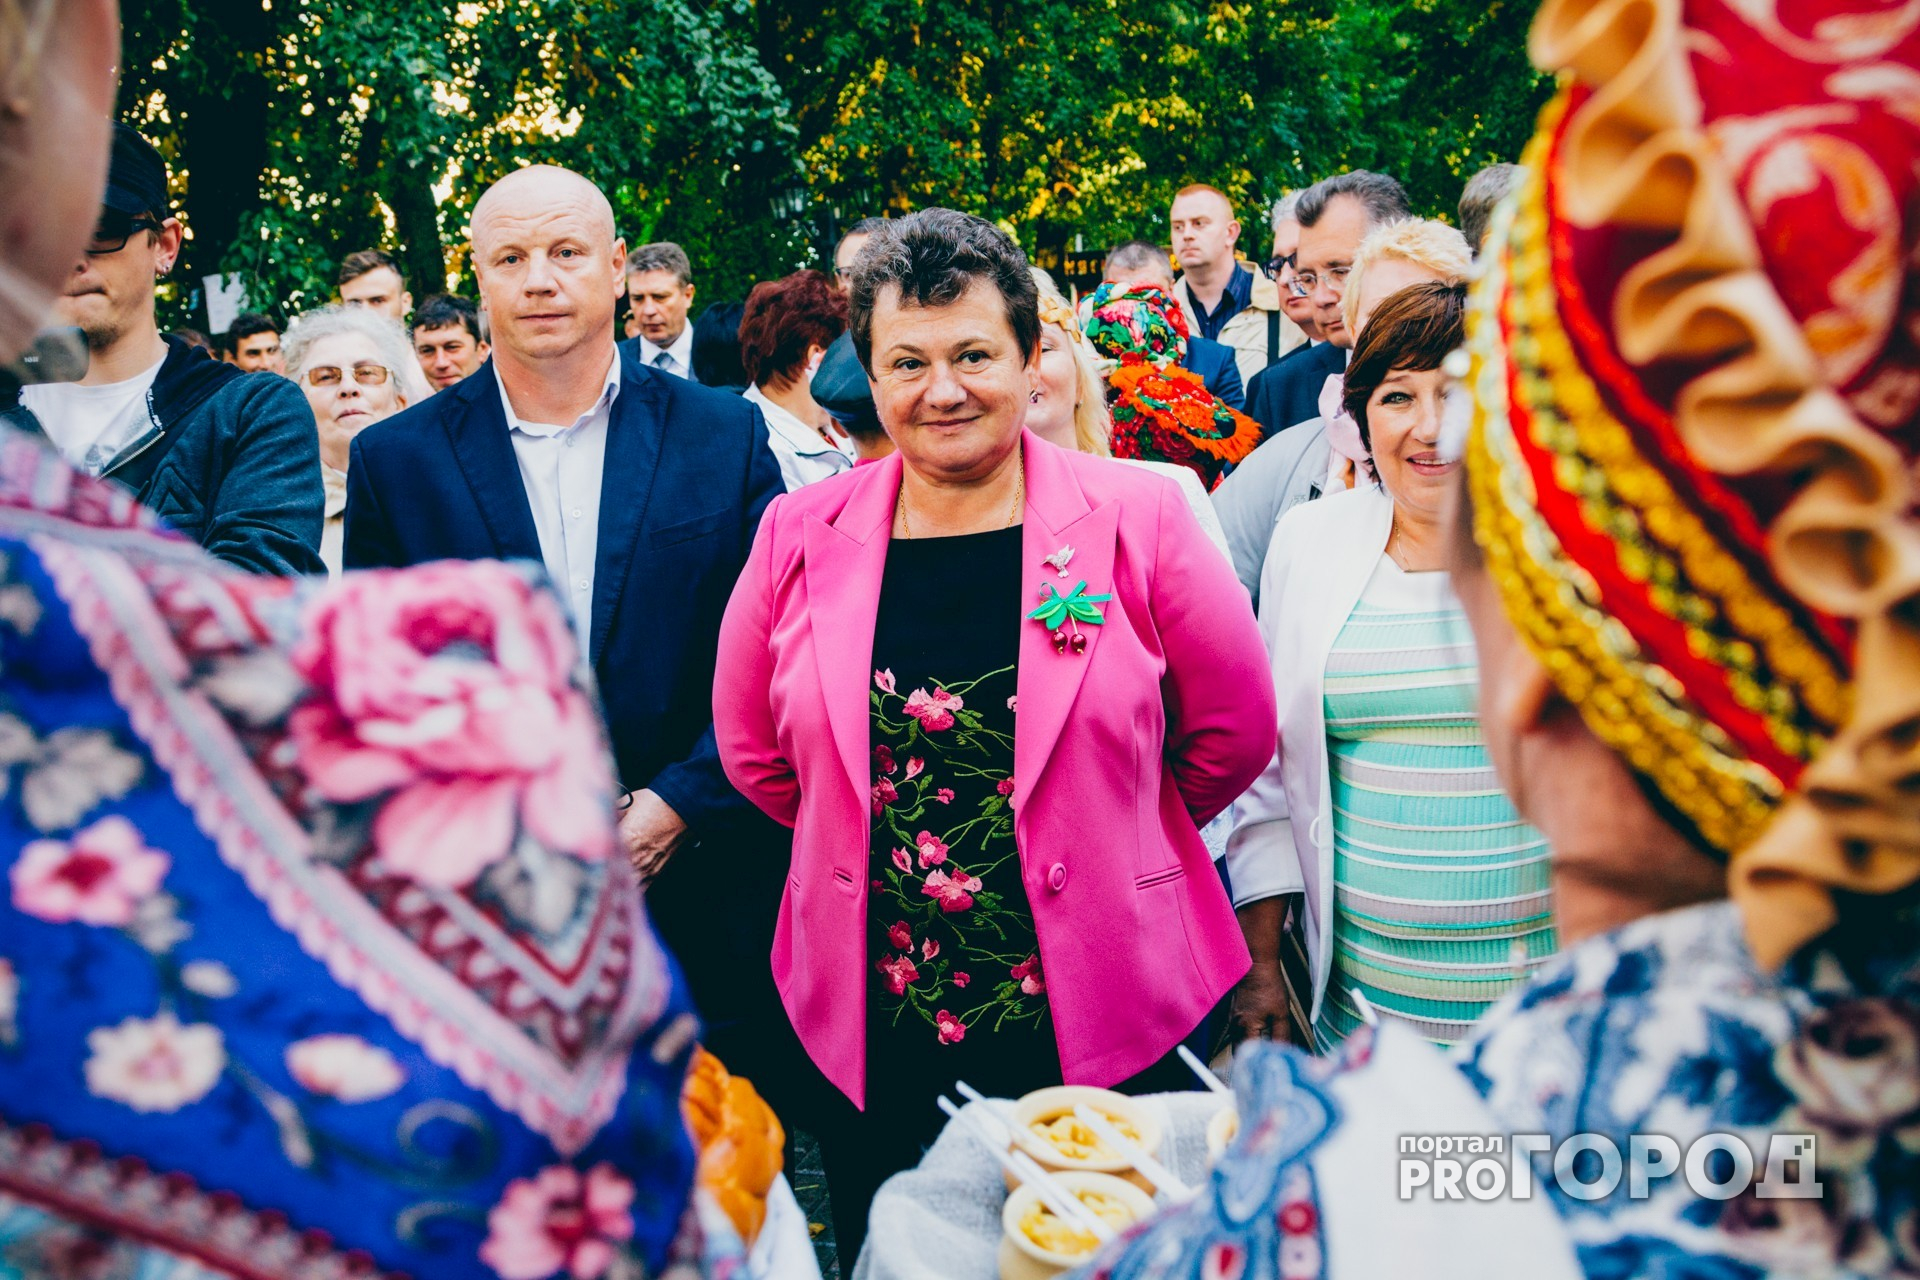 На праздник "Медовухаfest - 2017" потратят колоссальную сумму из бюджета Владимирской области